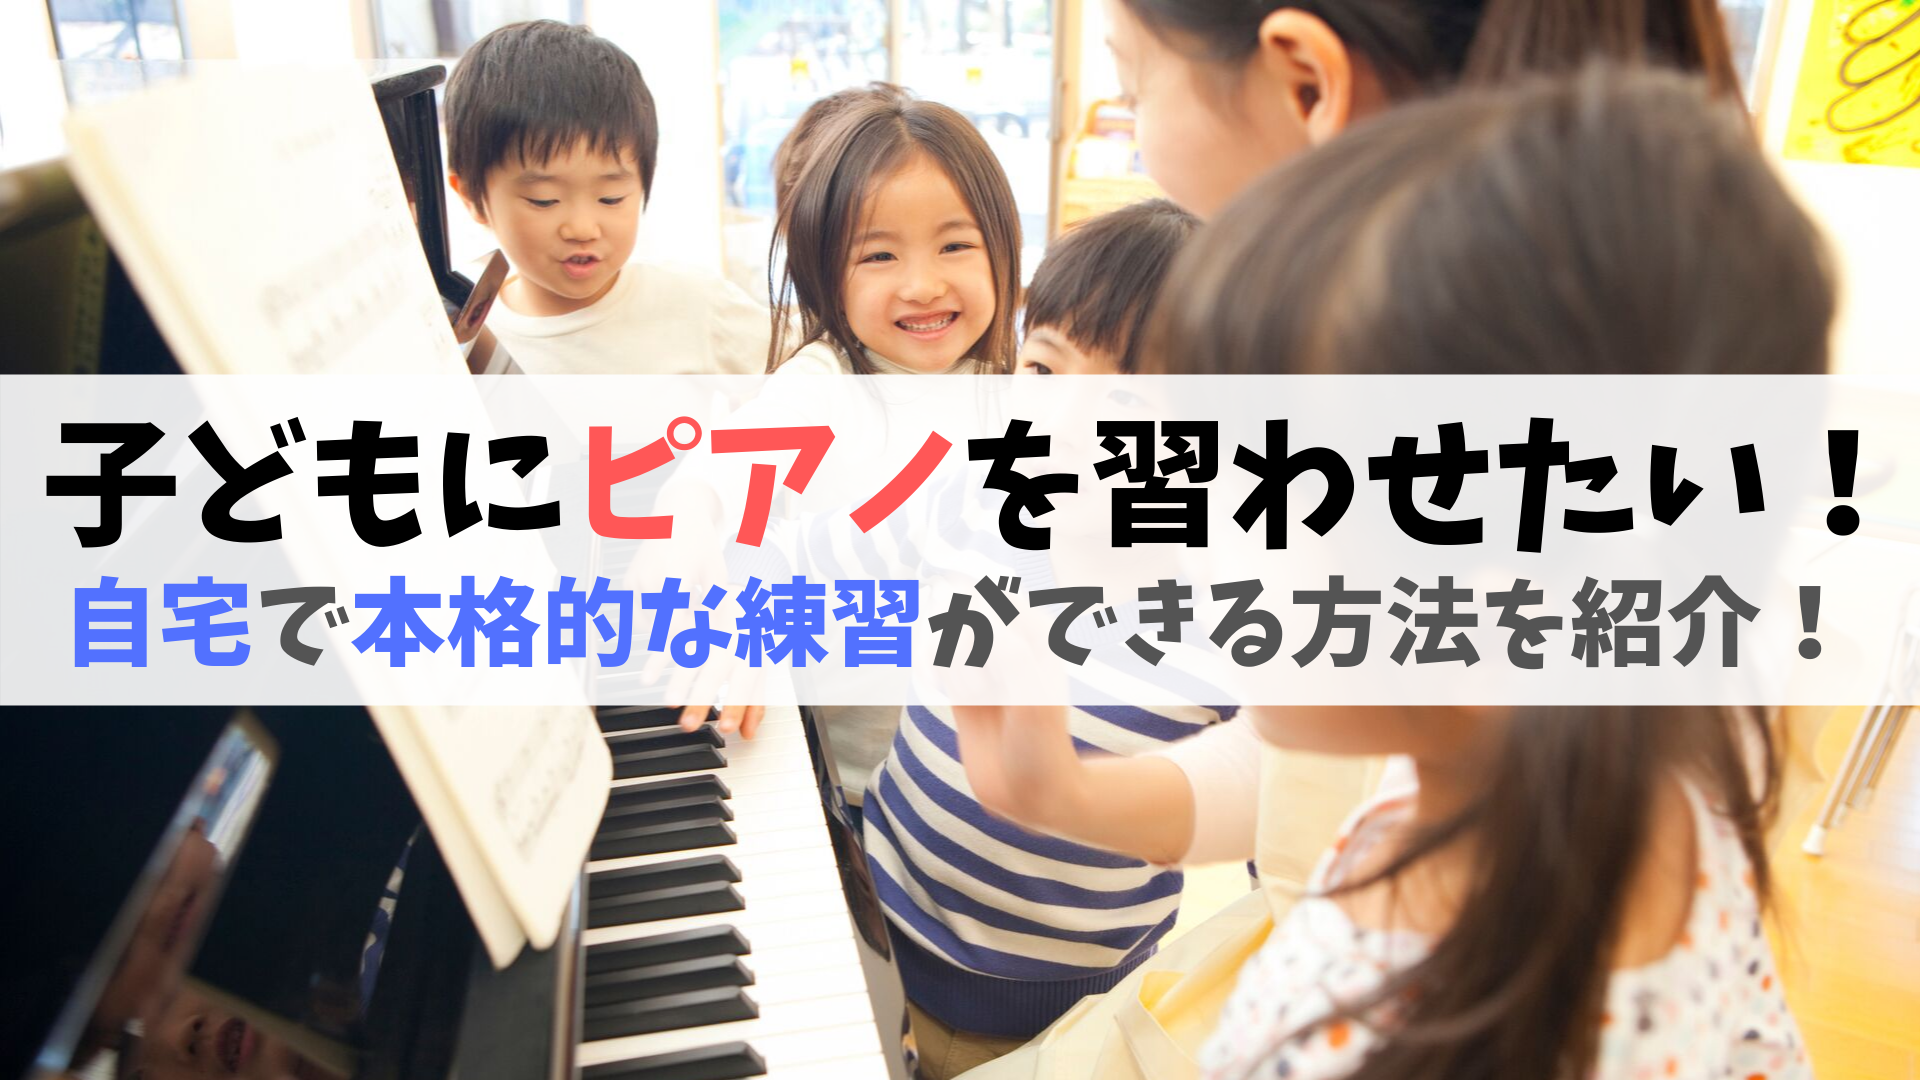 子どもにピアノを習わせたいけど教室に通うのは無理 そこで自宅で本格的な練習ができるキーボードを紹介 Making The Road